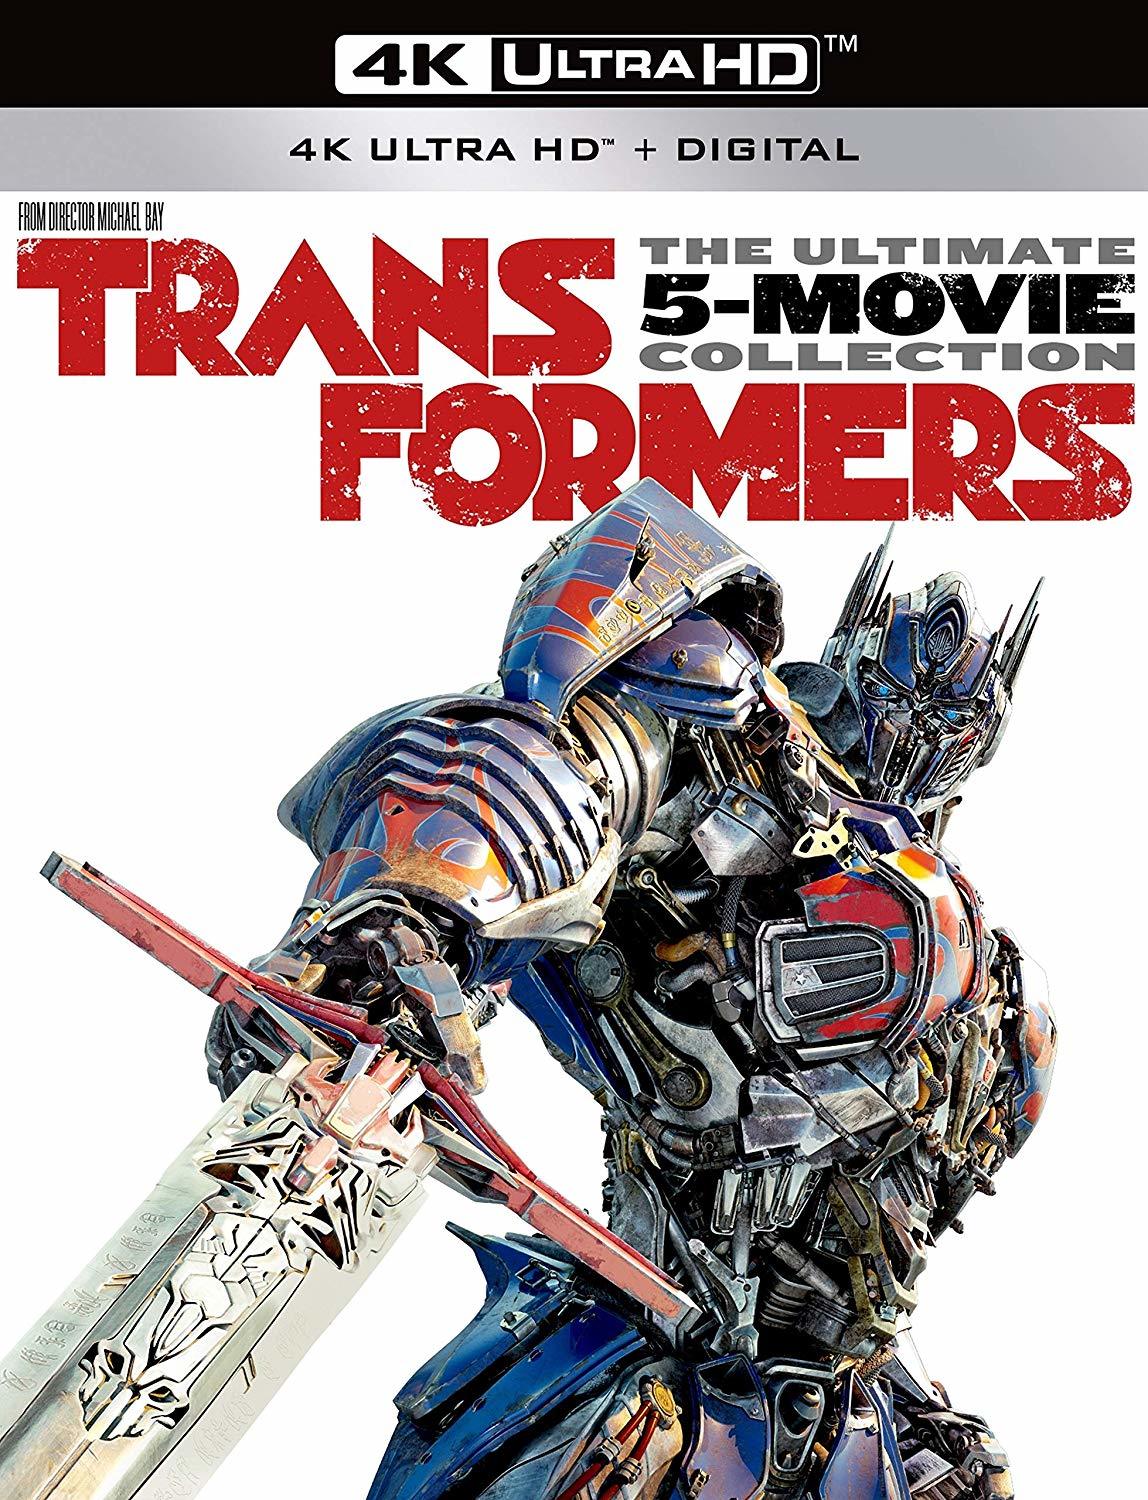 [变形金刚5].Transformers.2017.UK.3D.BluRay.1080p.AVC.TrueHD.7.1-XIOFE 46.5G-1.jpg